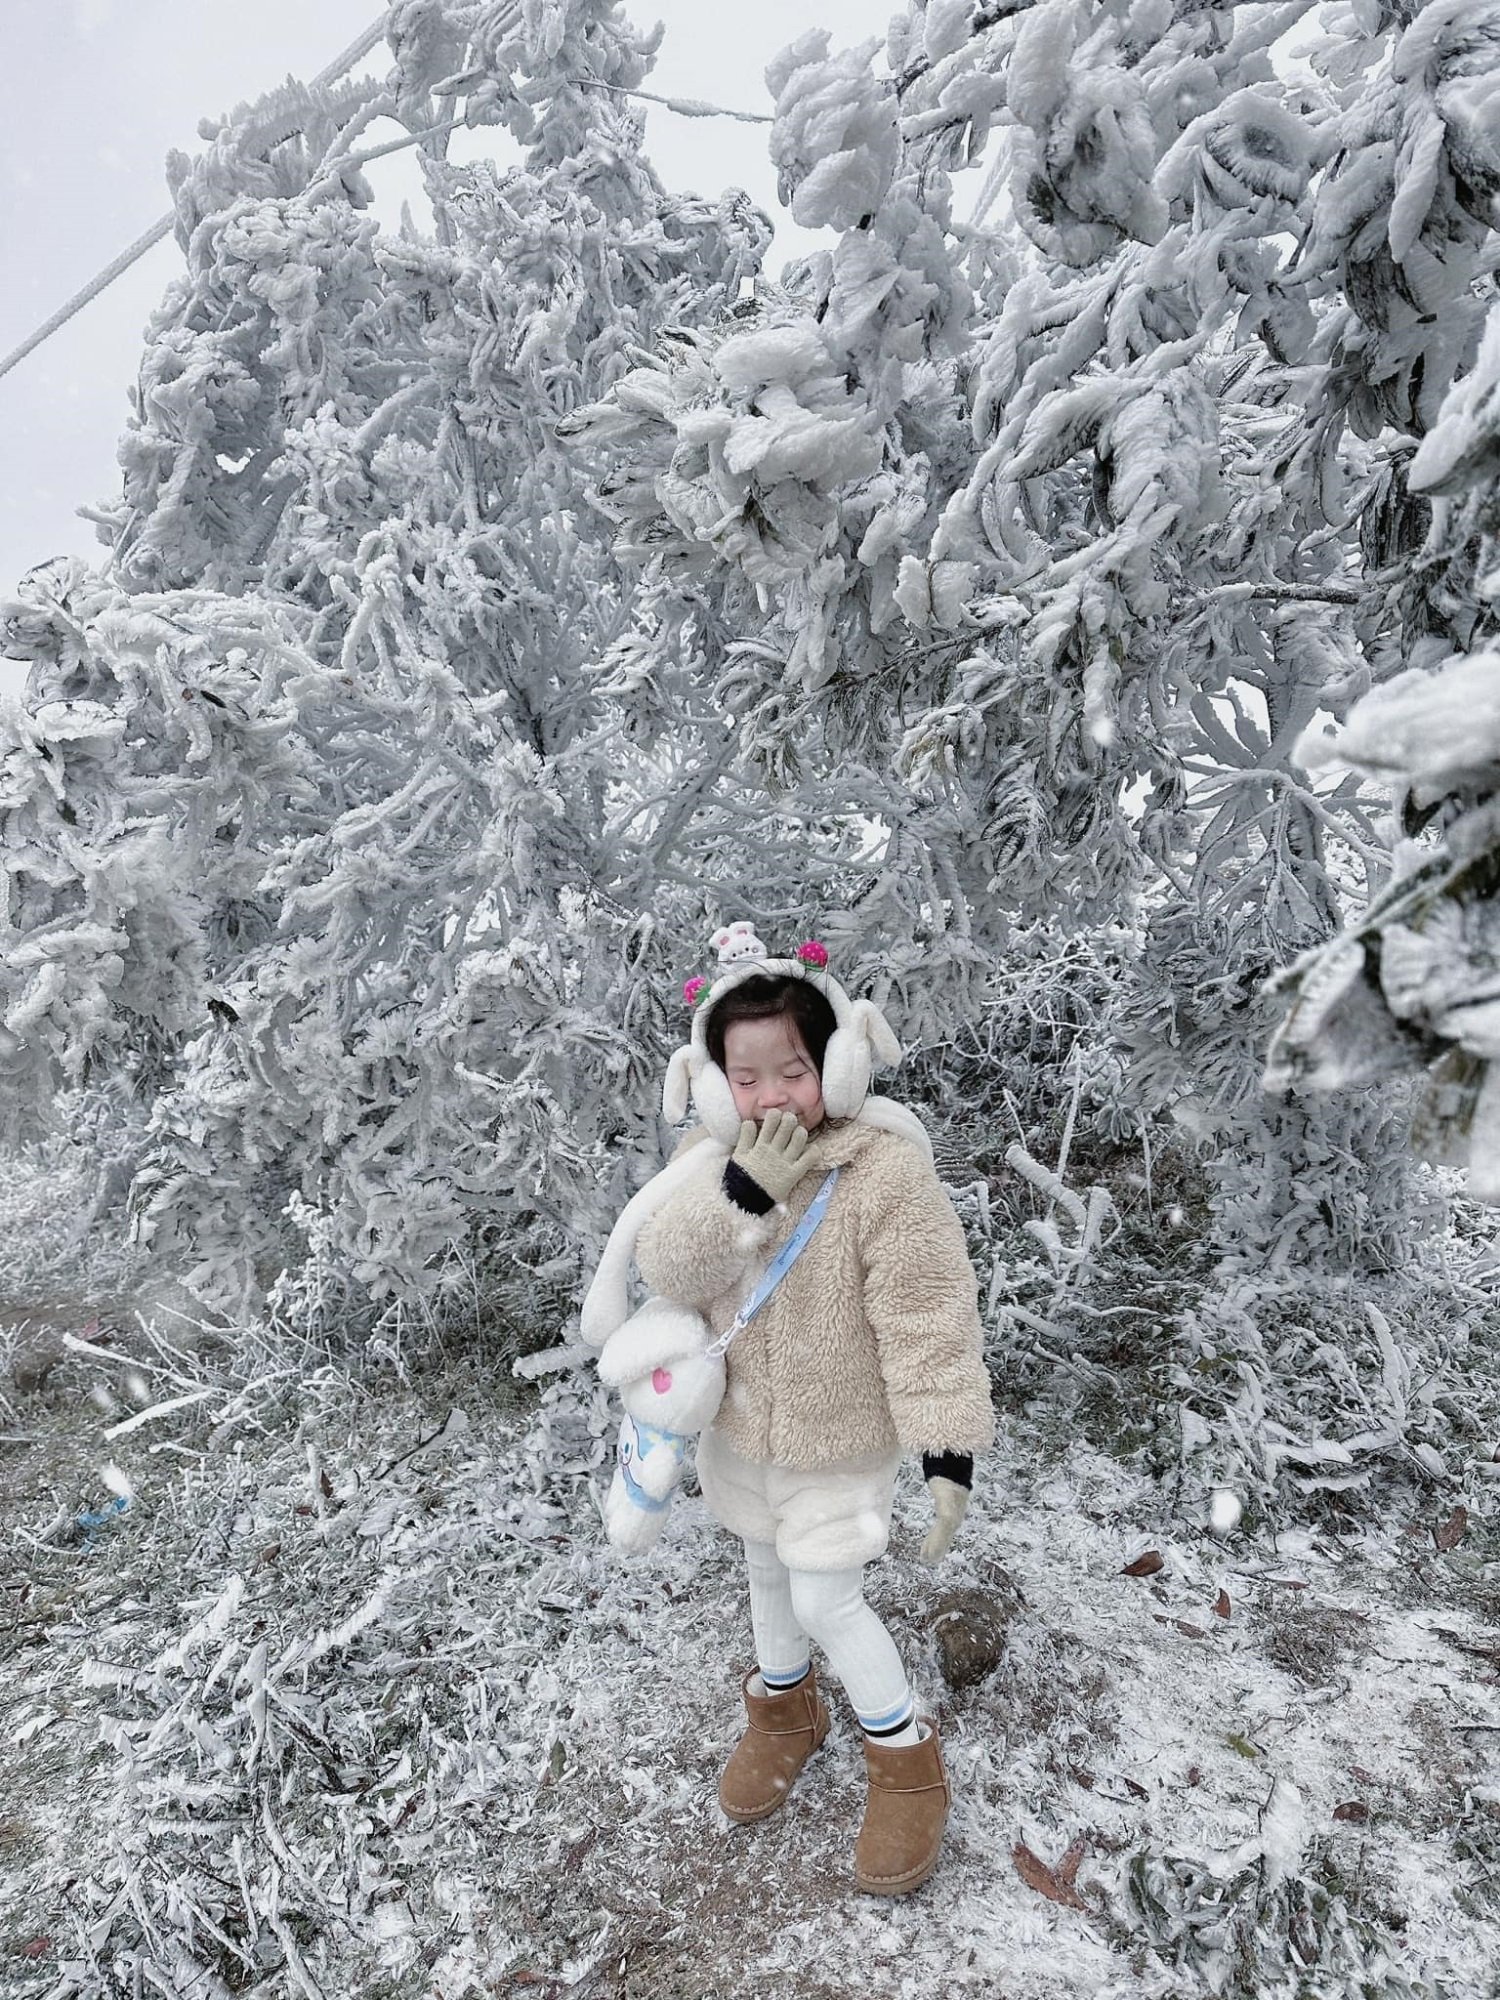 Tranh cãi chuyện nhà trường cho trẻ nghỉ học ở nhà vì lạnh, phụ huynh lại dẫn con đi 'săn' tuyết